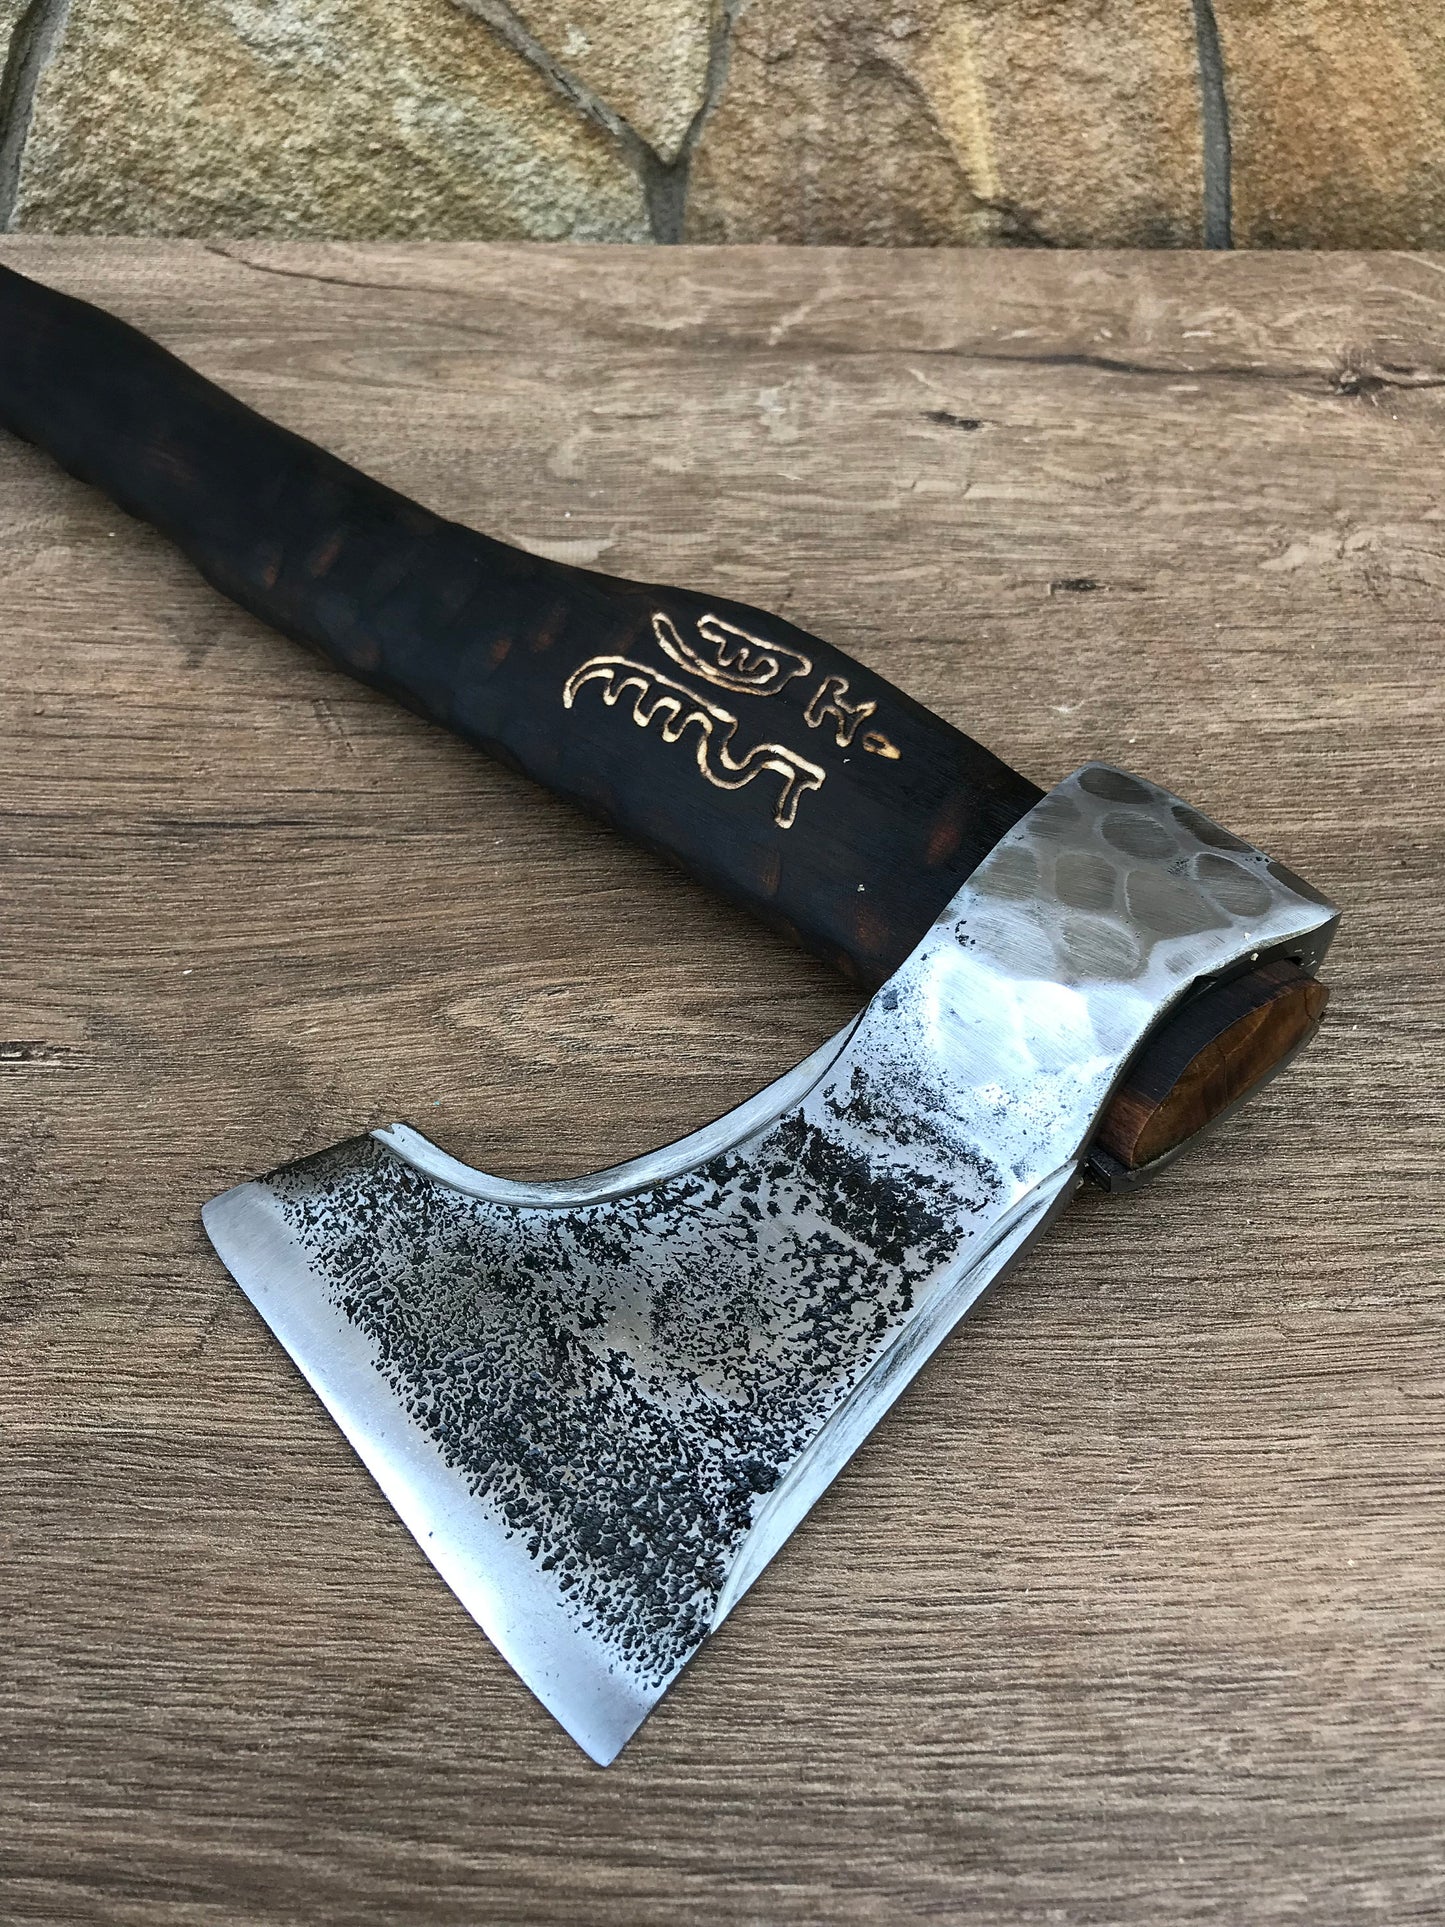 Viking axe, manly iron gifts, medieval axe, tomahawk, gifts for men, viking tomahawk, viking knife, handcrafted axe, backyard axe, axe head